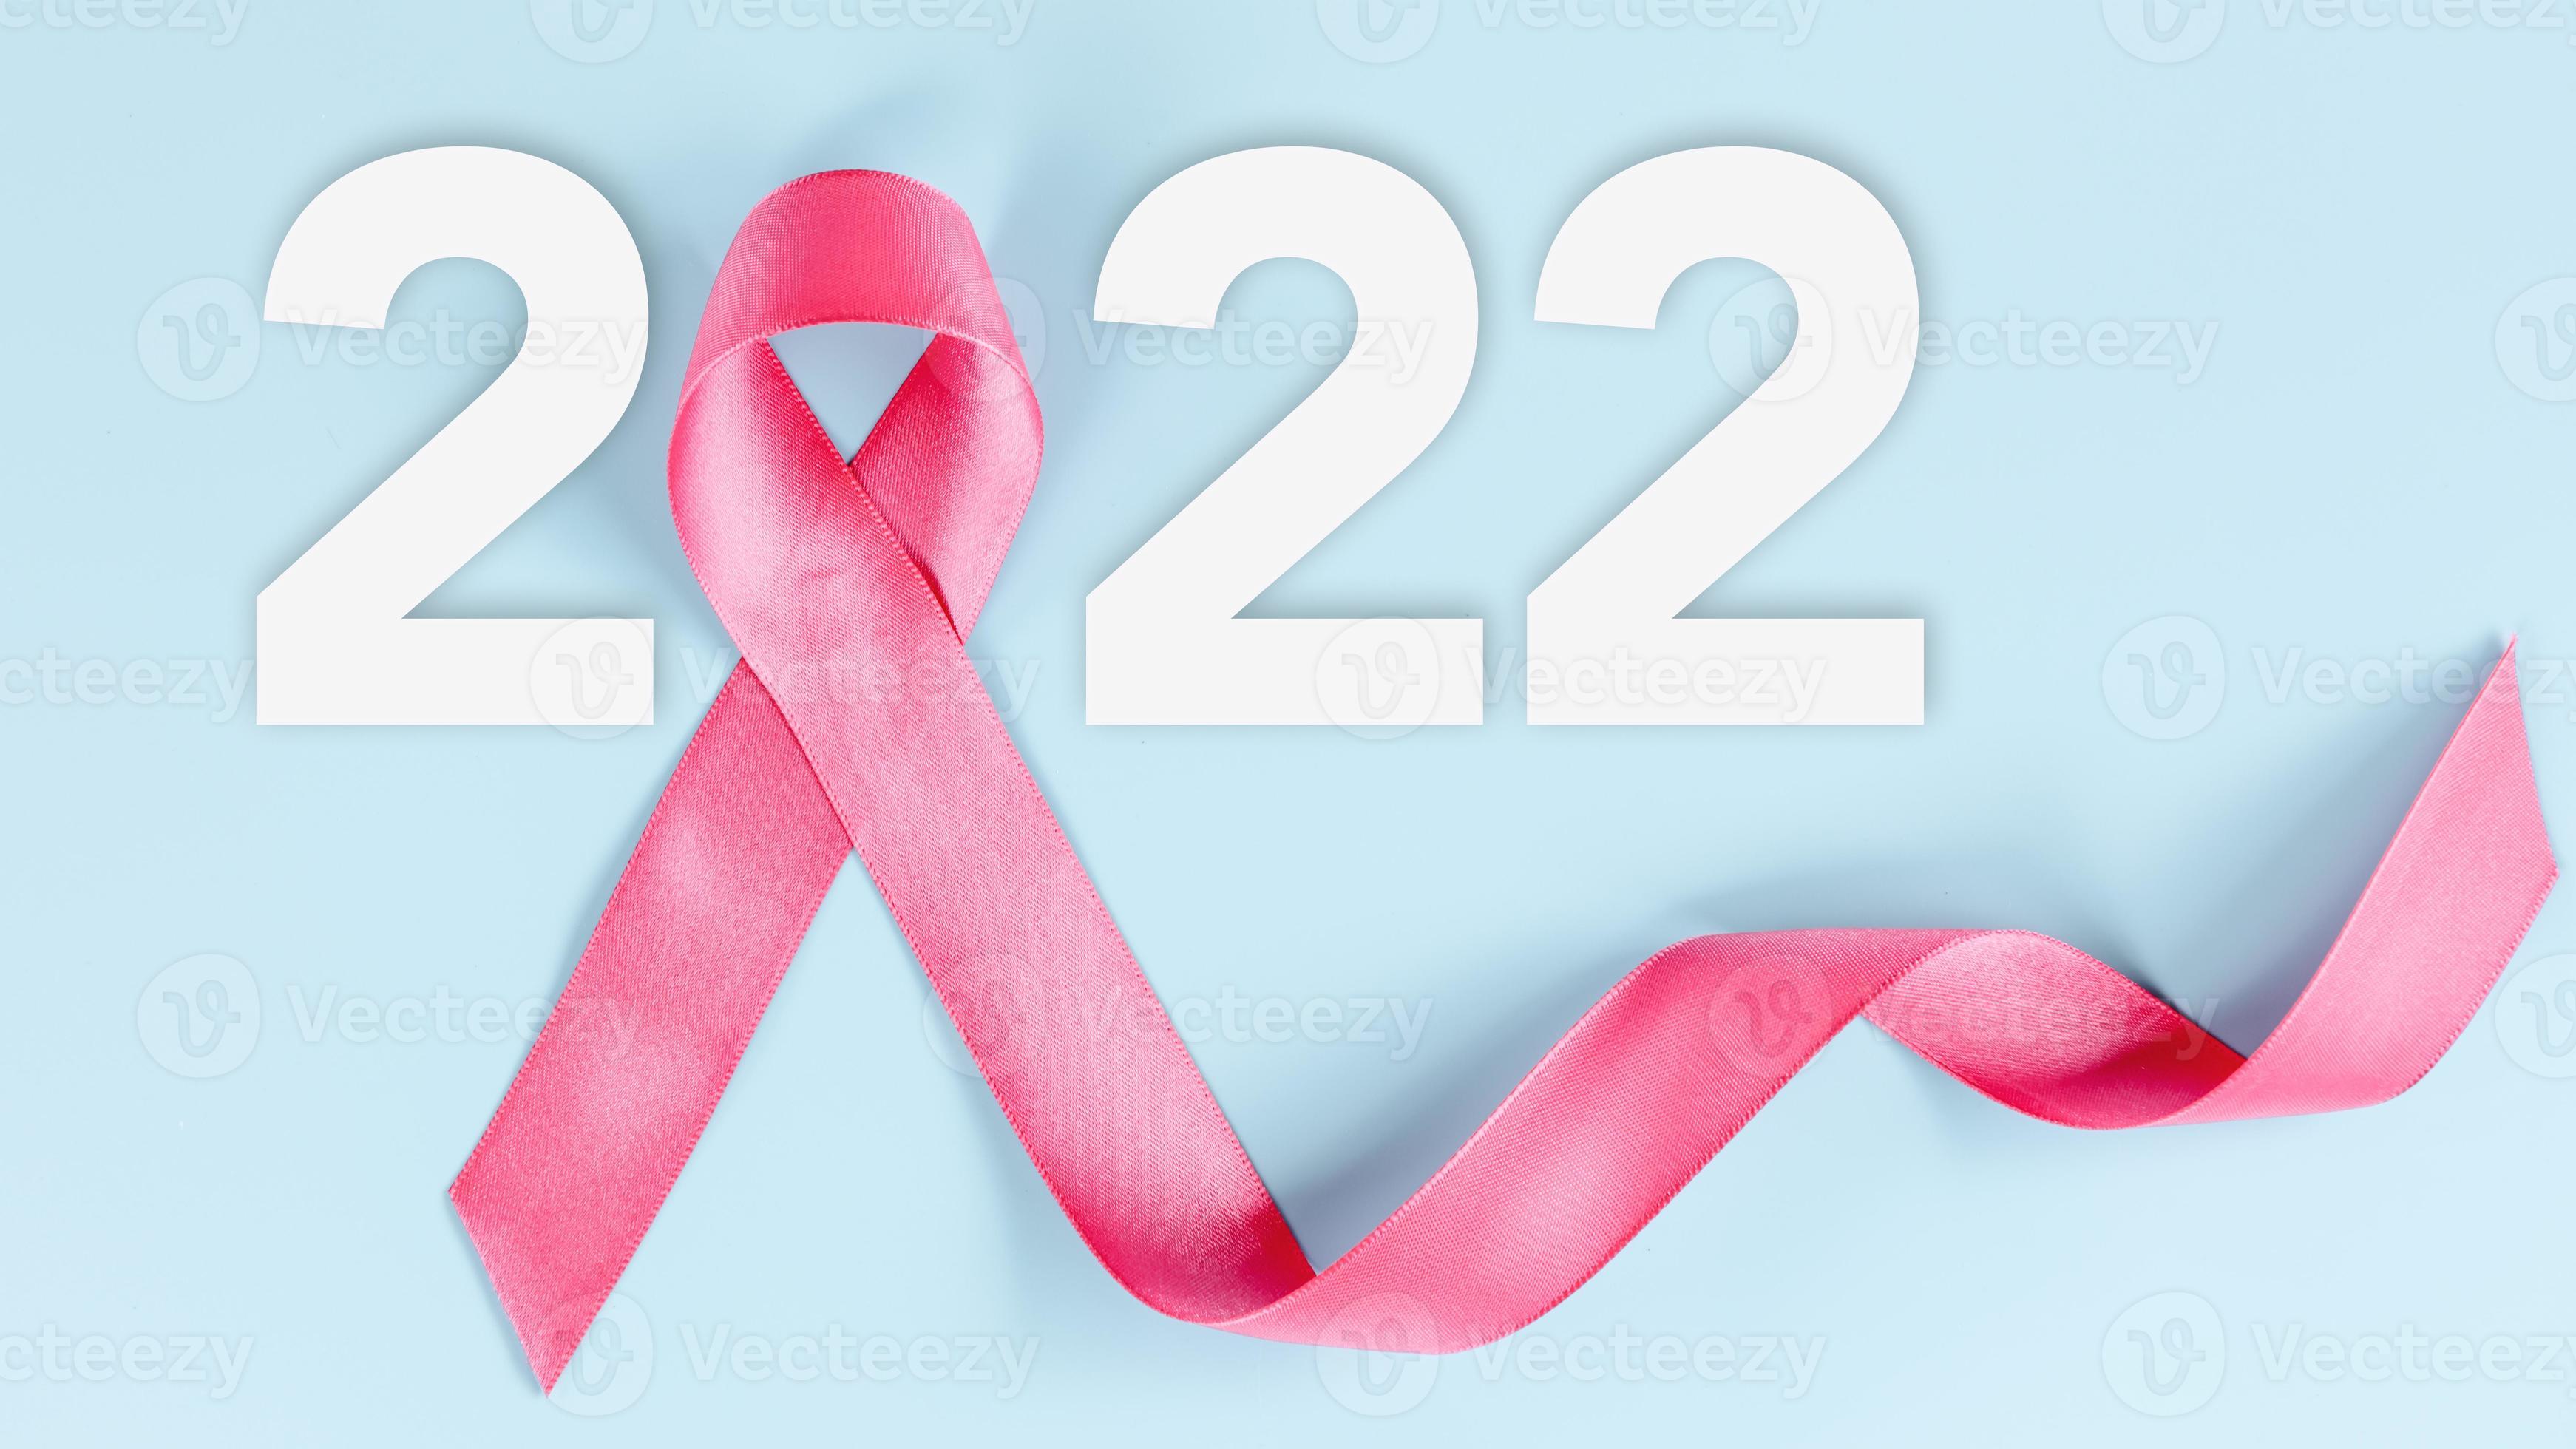 Cancer day 2022 world World Cancer